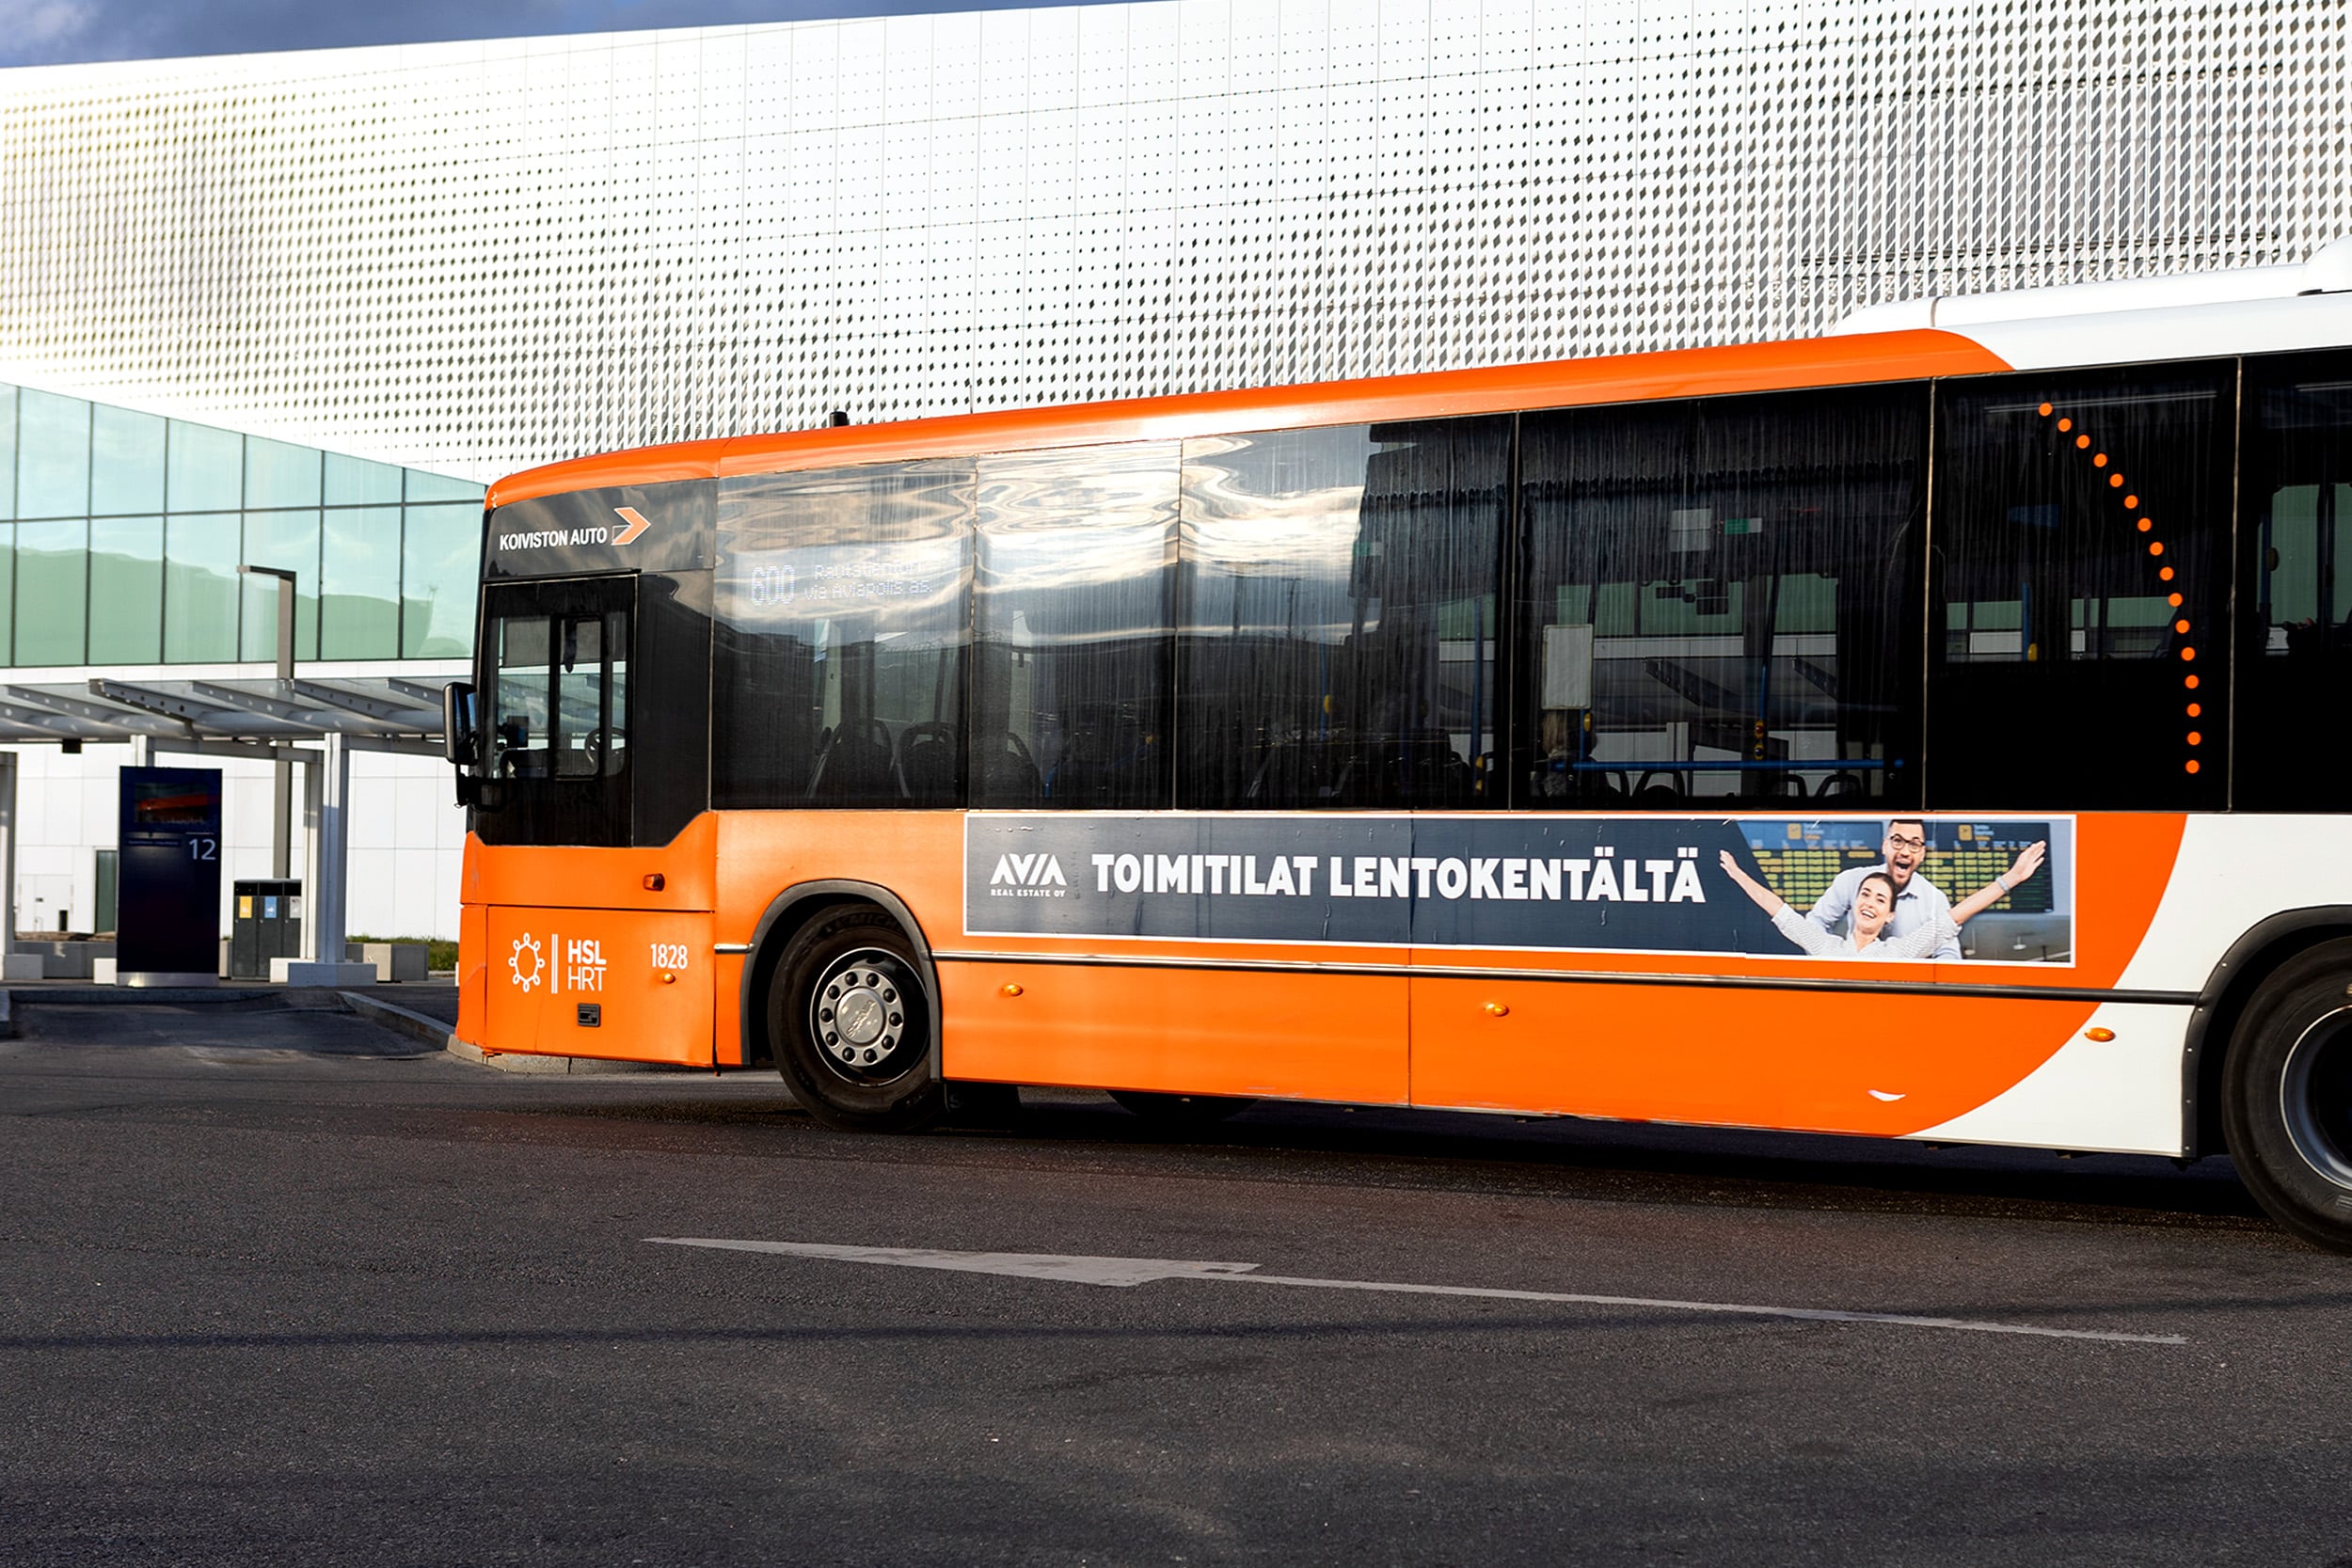 Kampanjaan tehtiin myös ulkomainokset bussinkylkiin.